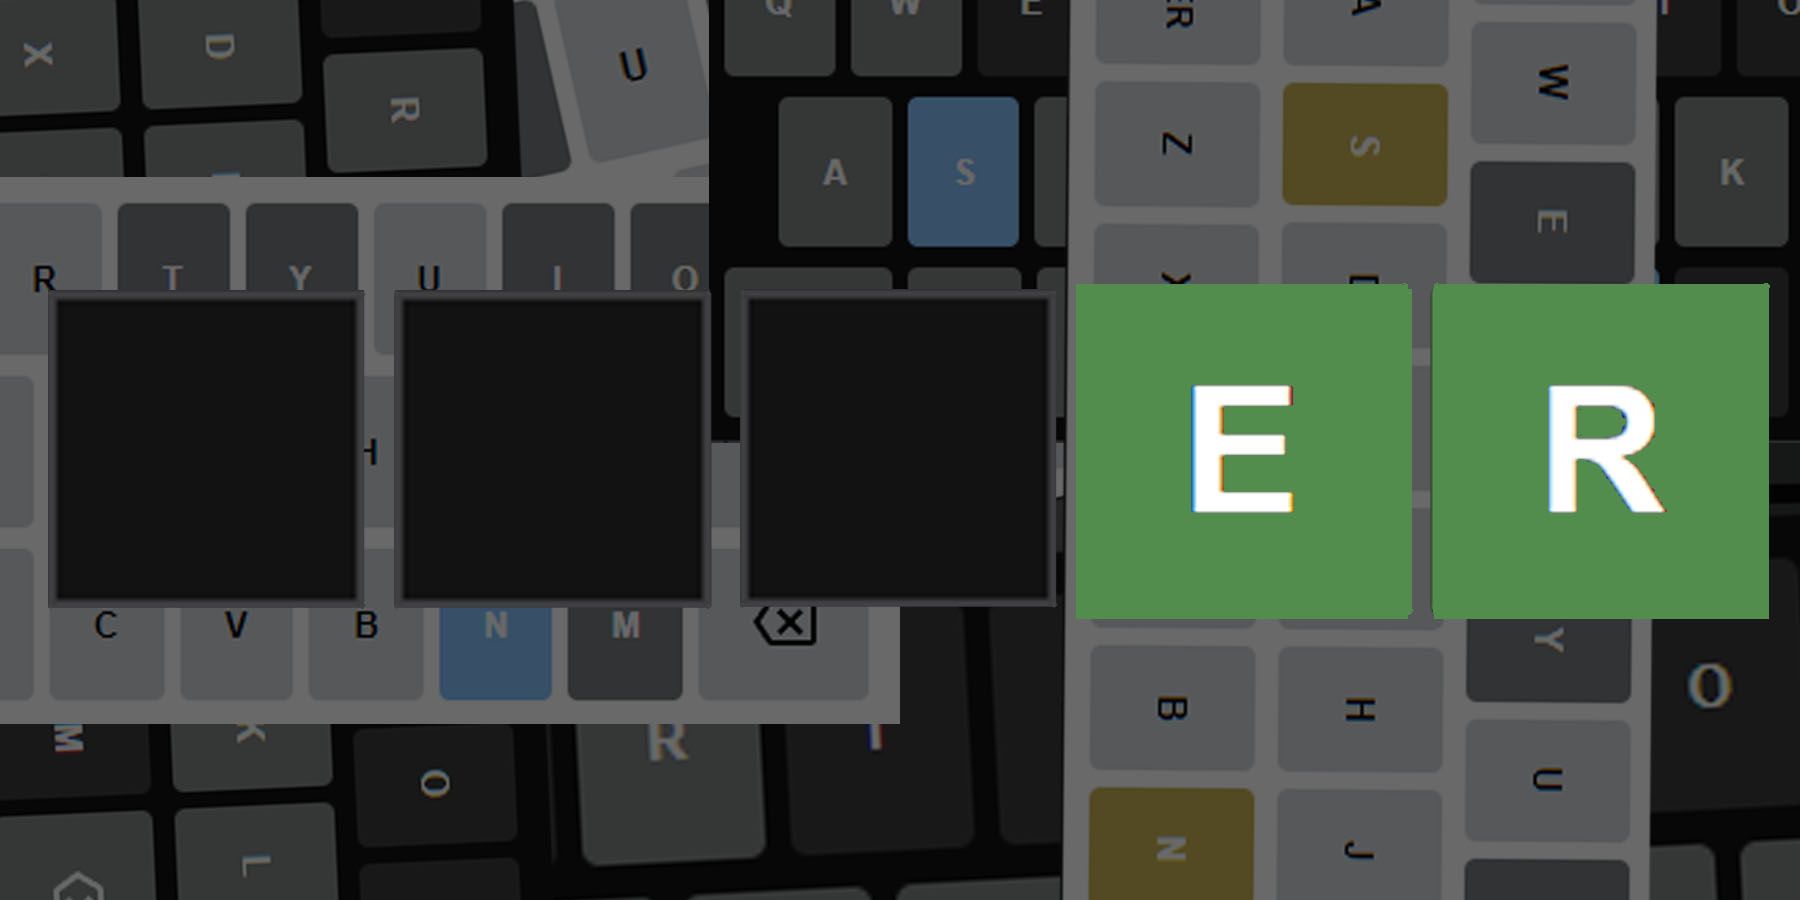 Wordle 335 Guide: 5-bogstaver ord, der slutter på ER